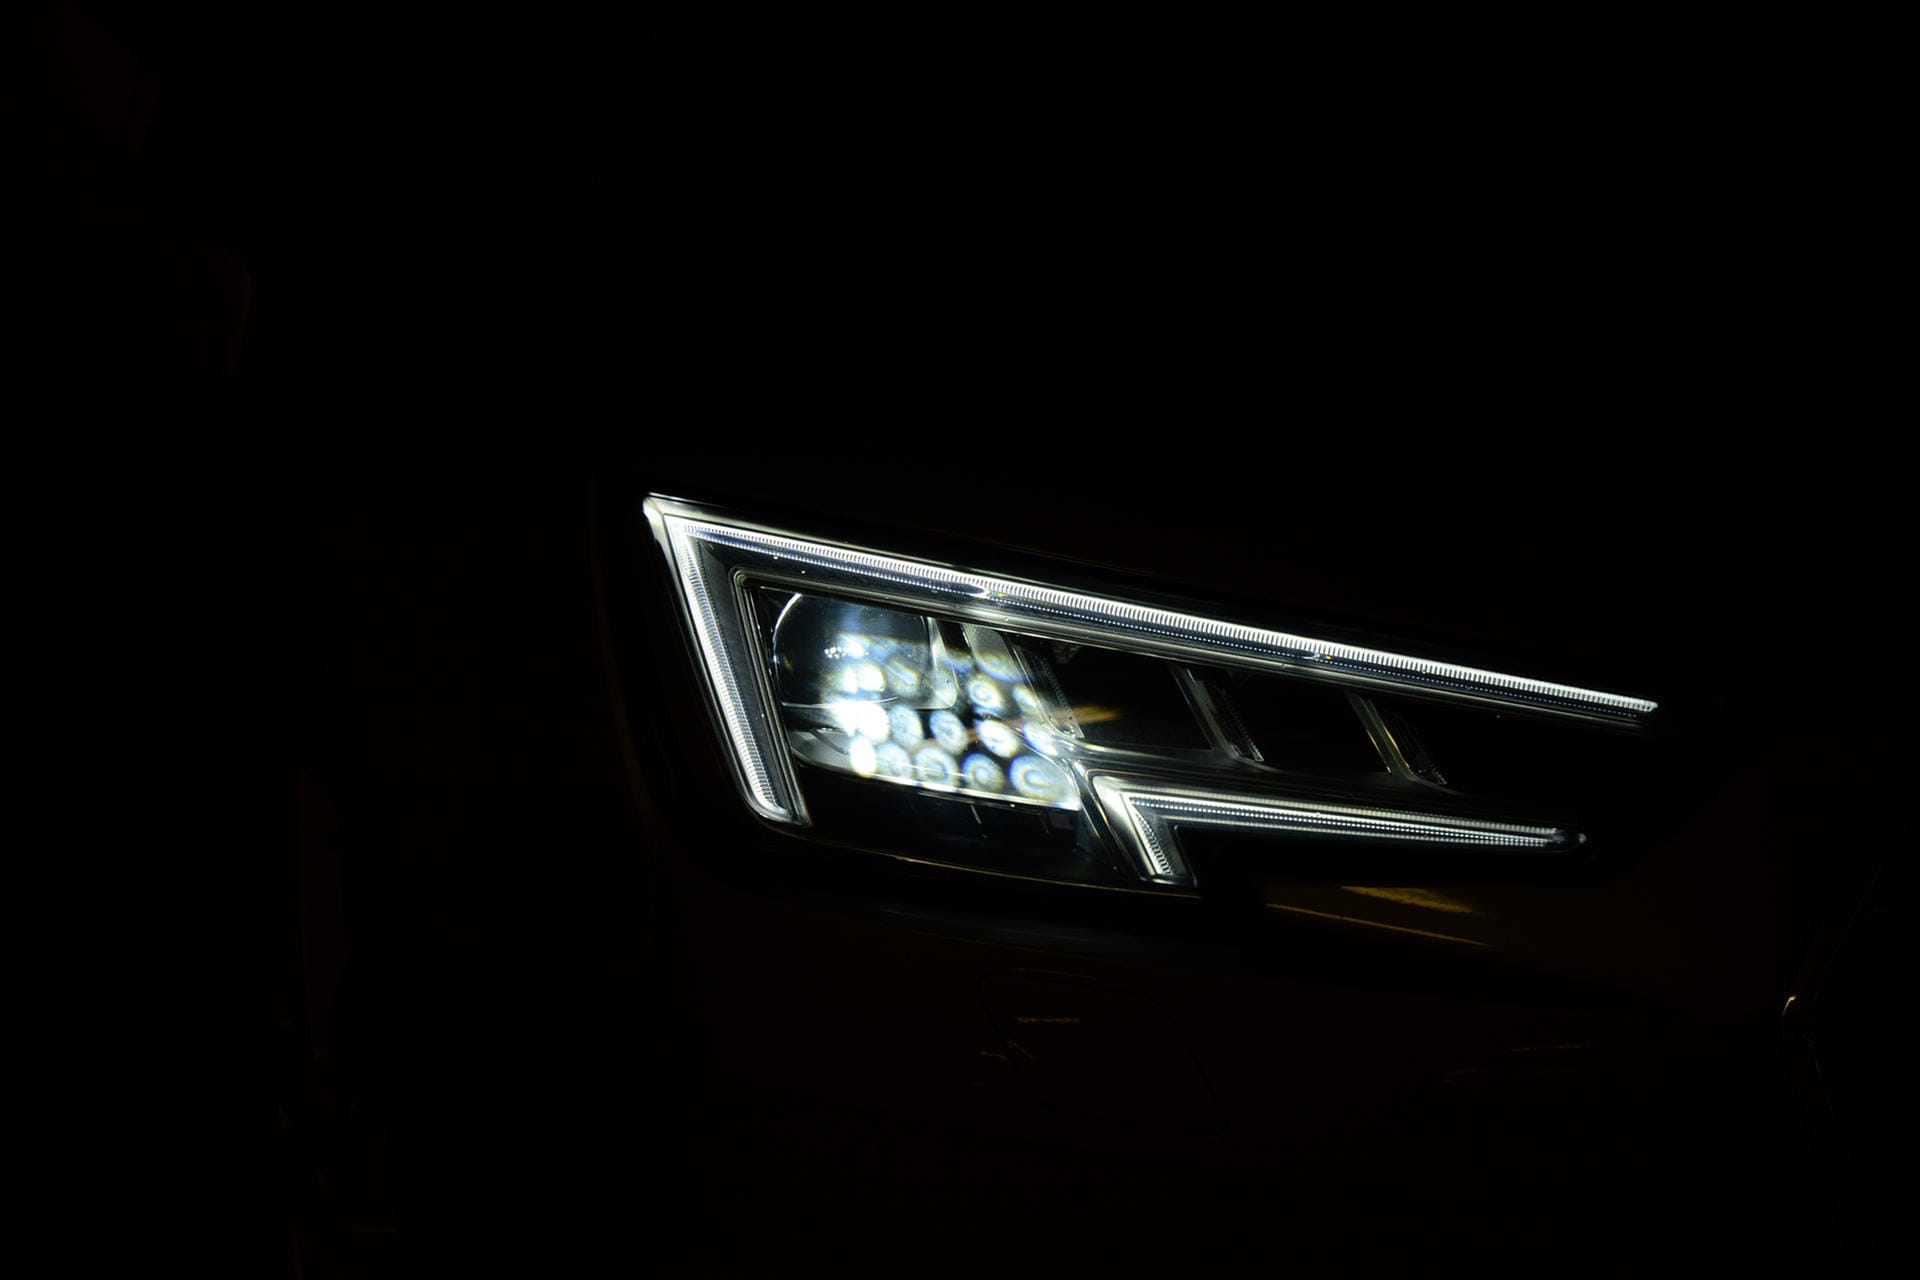 Unverwechselbar sind die Matrix-LED-Scheinwerfer, die in der Nacht die Straße sehr klar und hell ausleuchten.